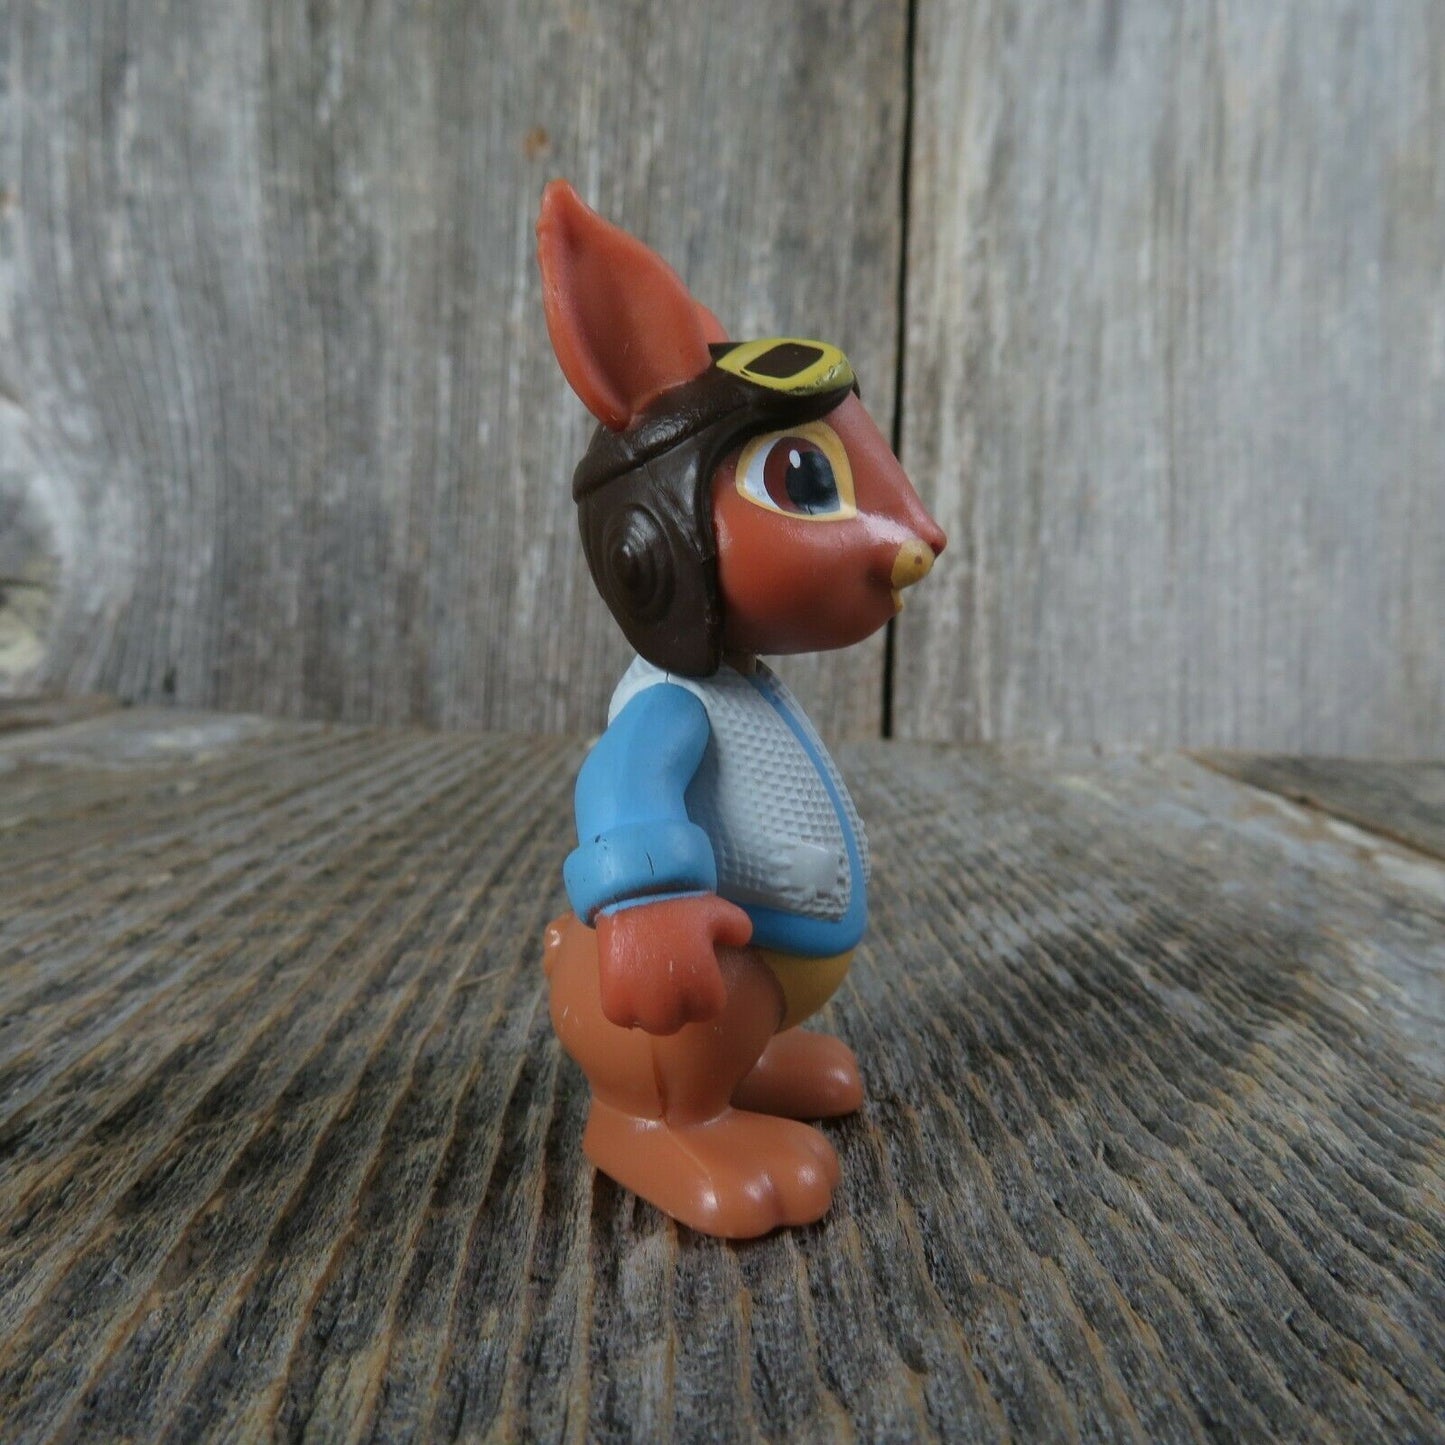 Peter Rabbit Aviator Toy Nick Jr Movie Bunny Pilot Airplane Cotton Tail figure